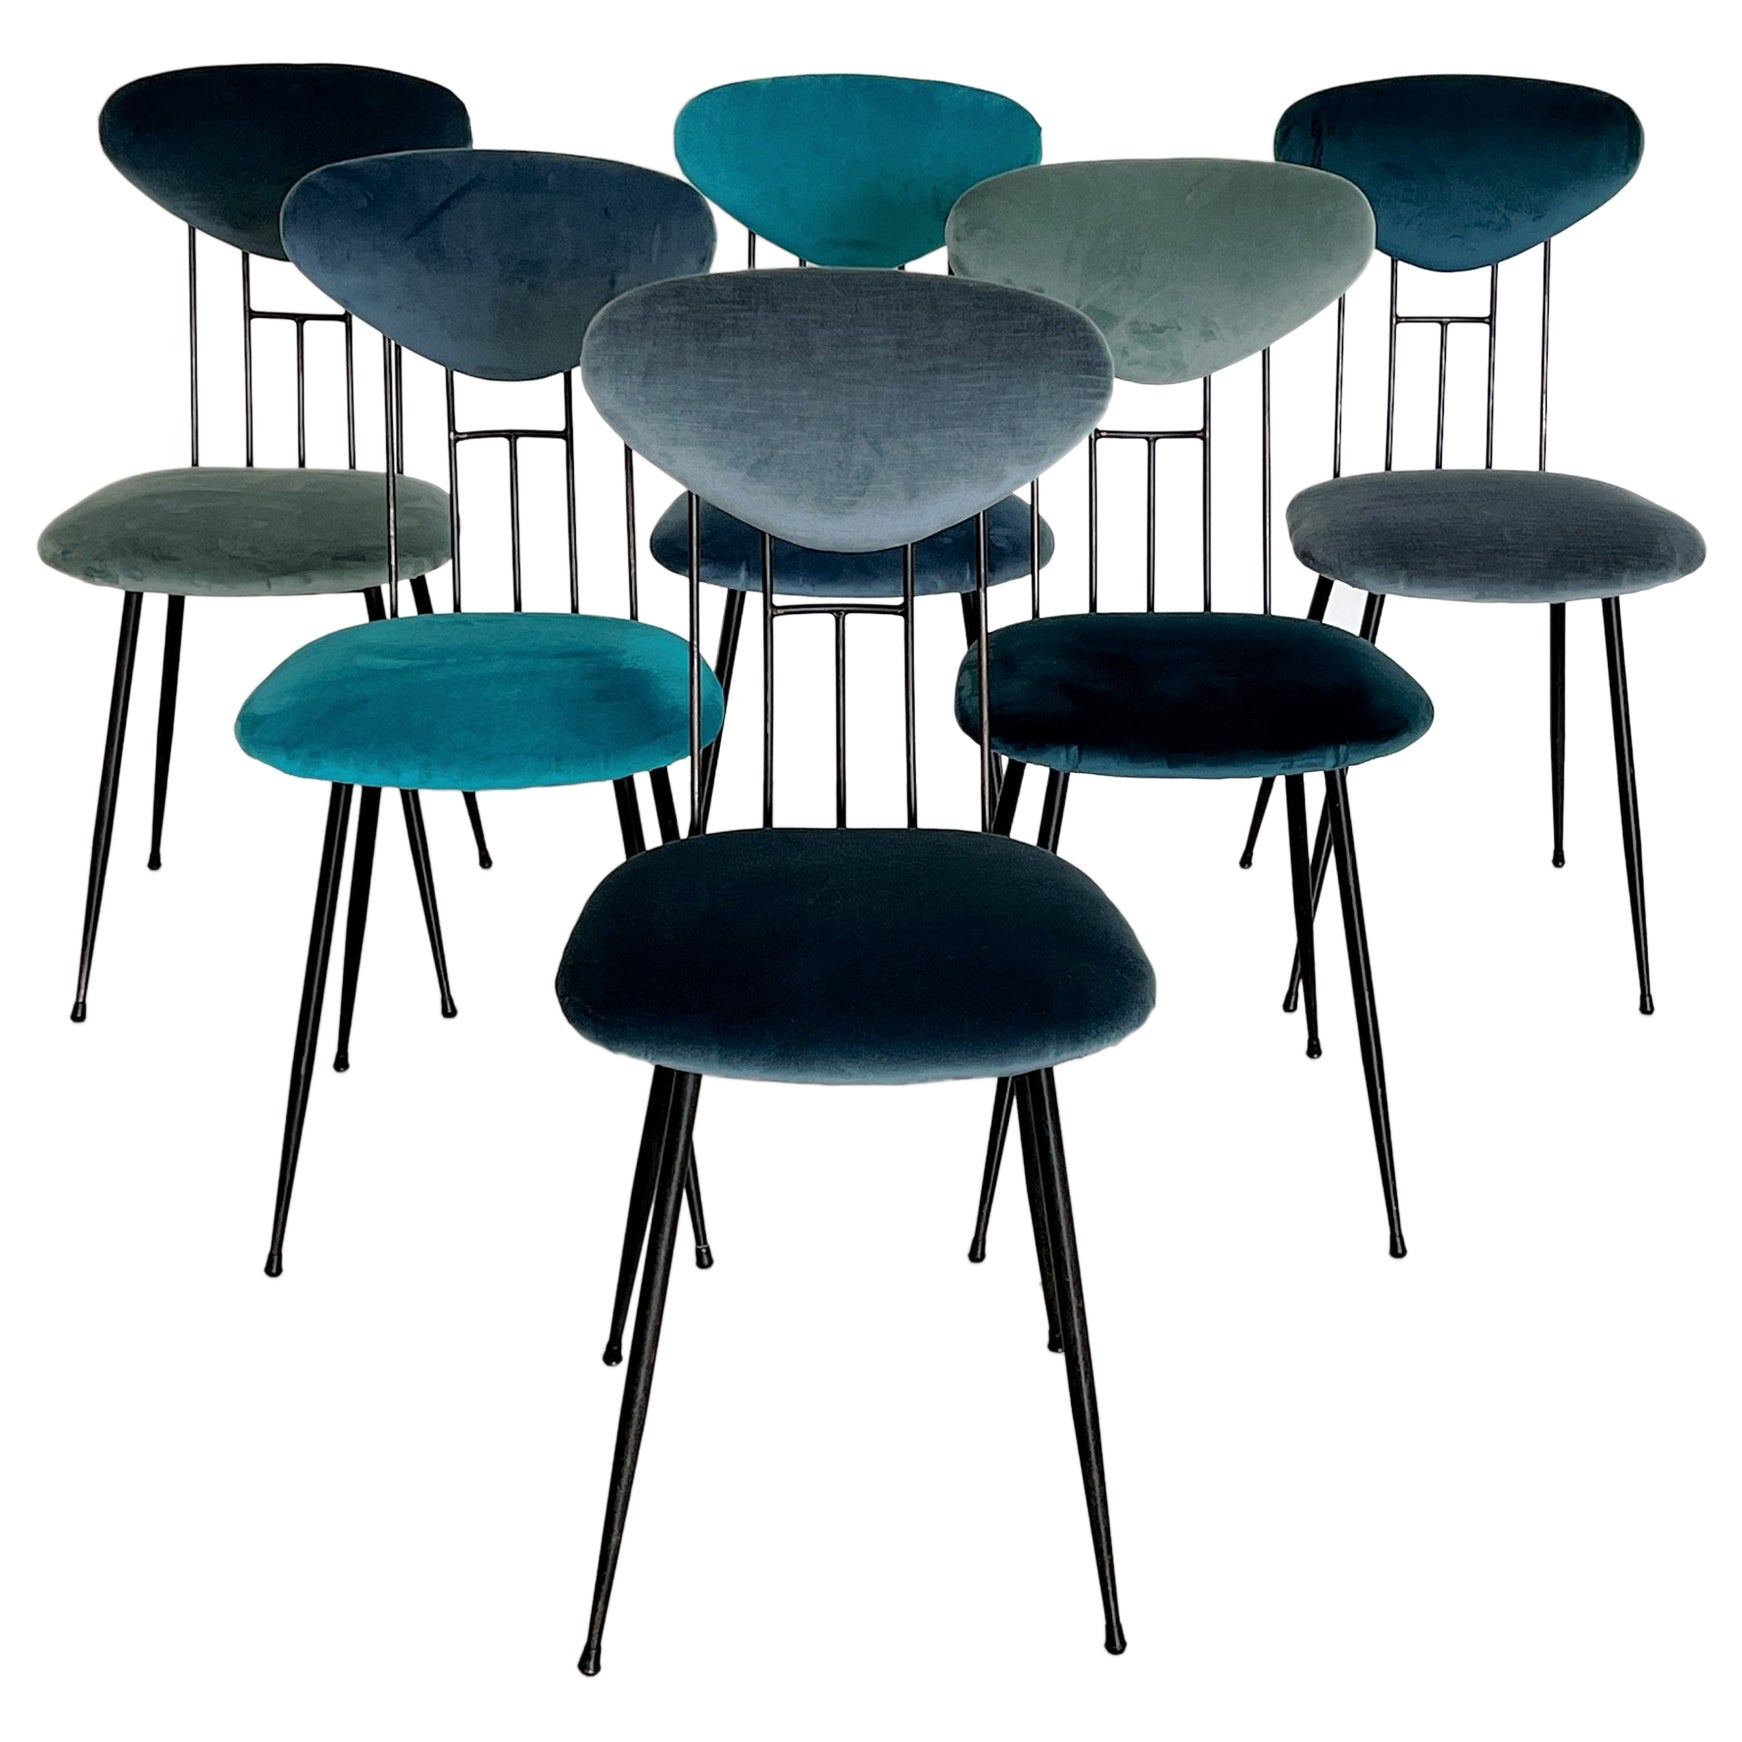 Italian Midcentury Dining Room Chairs Re-Upholstered in Velvet, 1960s For Sale